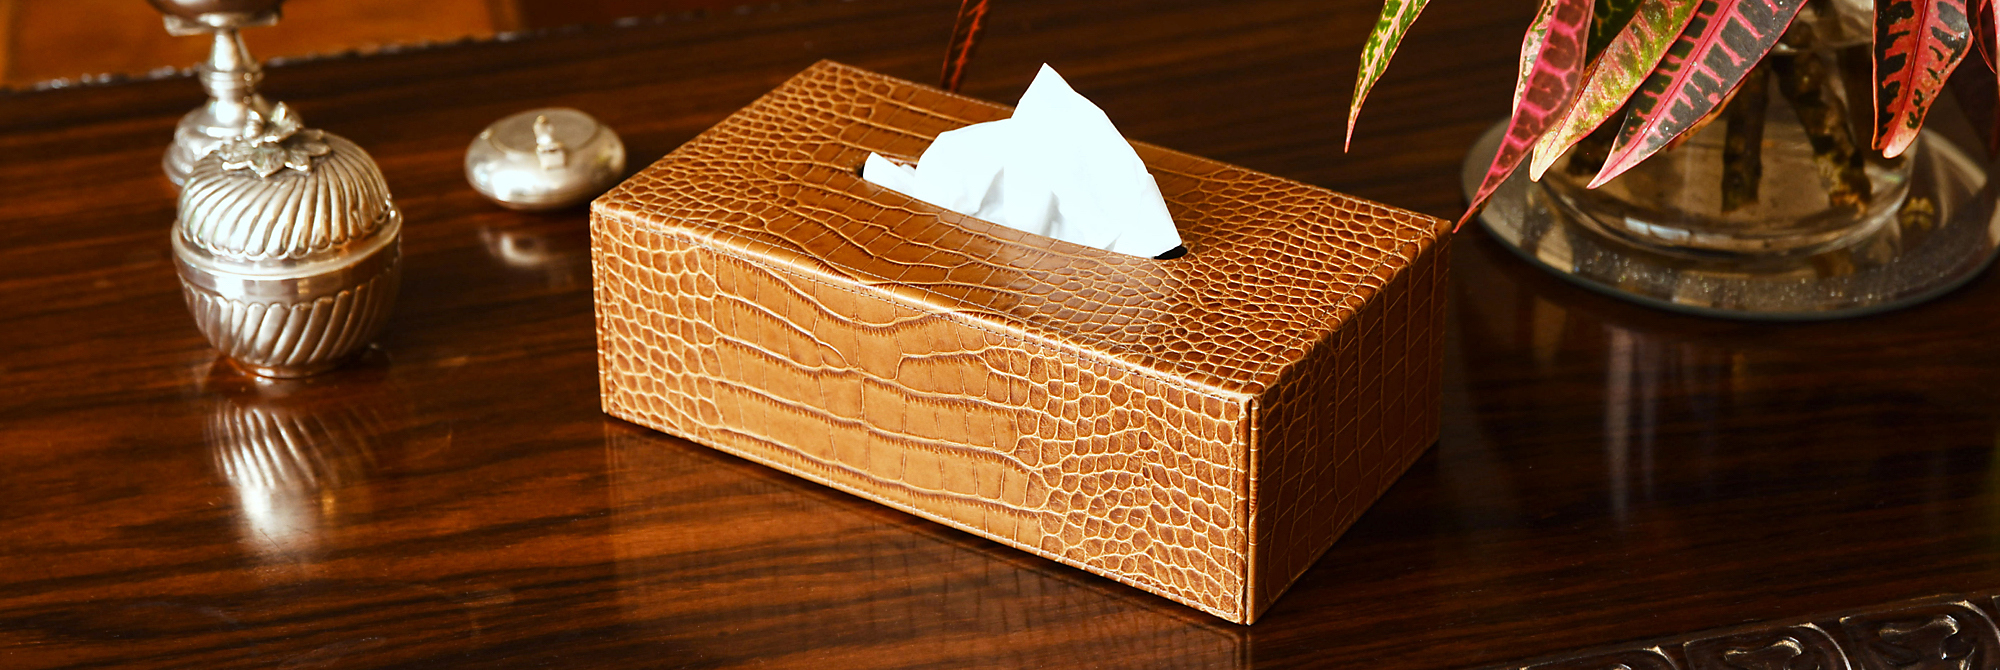 BAROZN Scatola per fazzoletti 1 Tissue Pc acrilica Quadrata Fashion Box Trasparente Holder Tissue Paper Box di stoccaggio del Tessuto di Caso for la casa Ristoranti Alberghi 